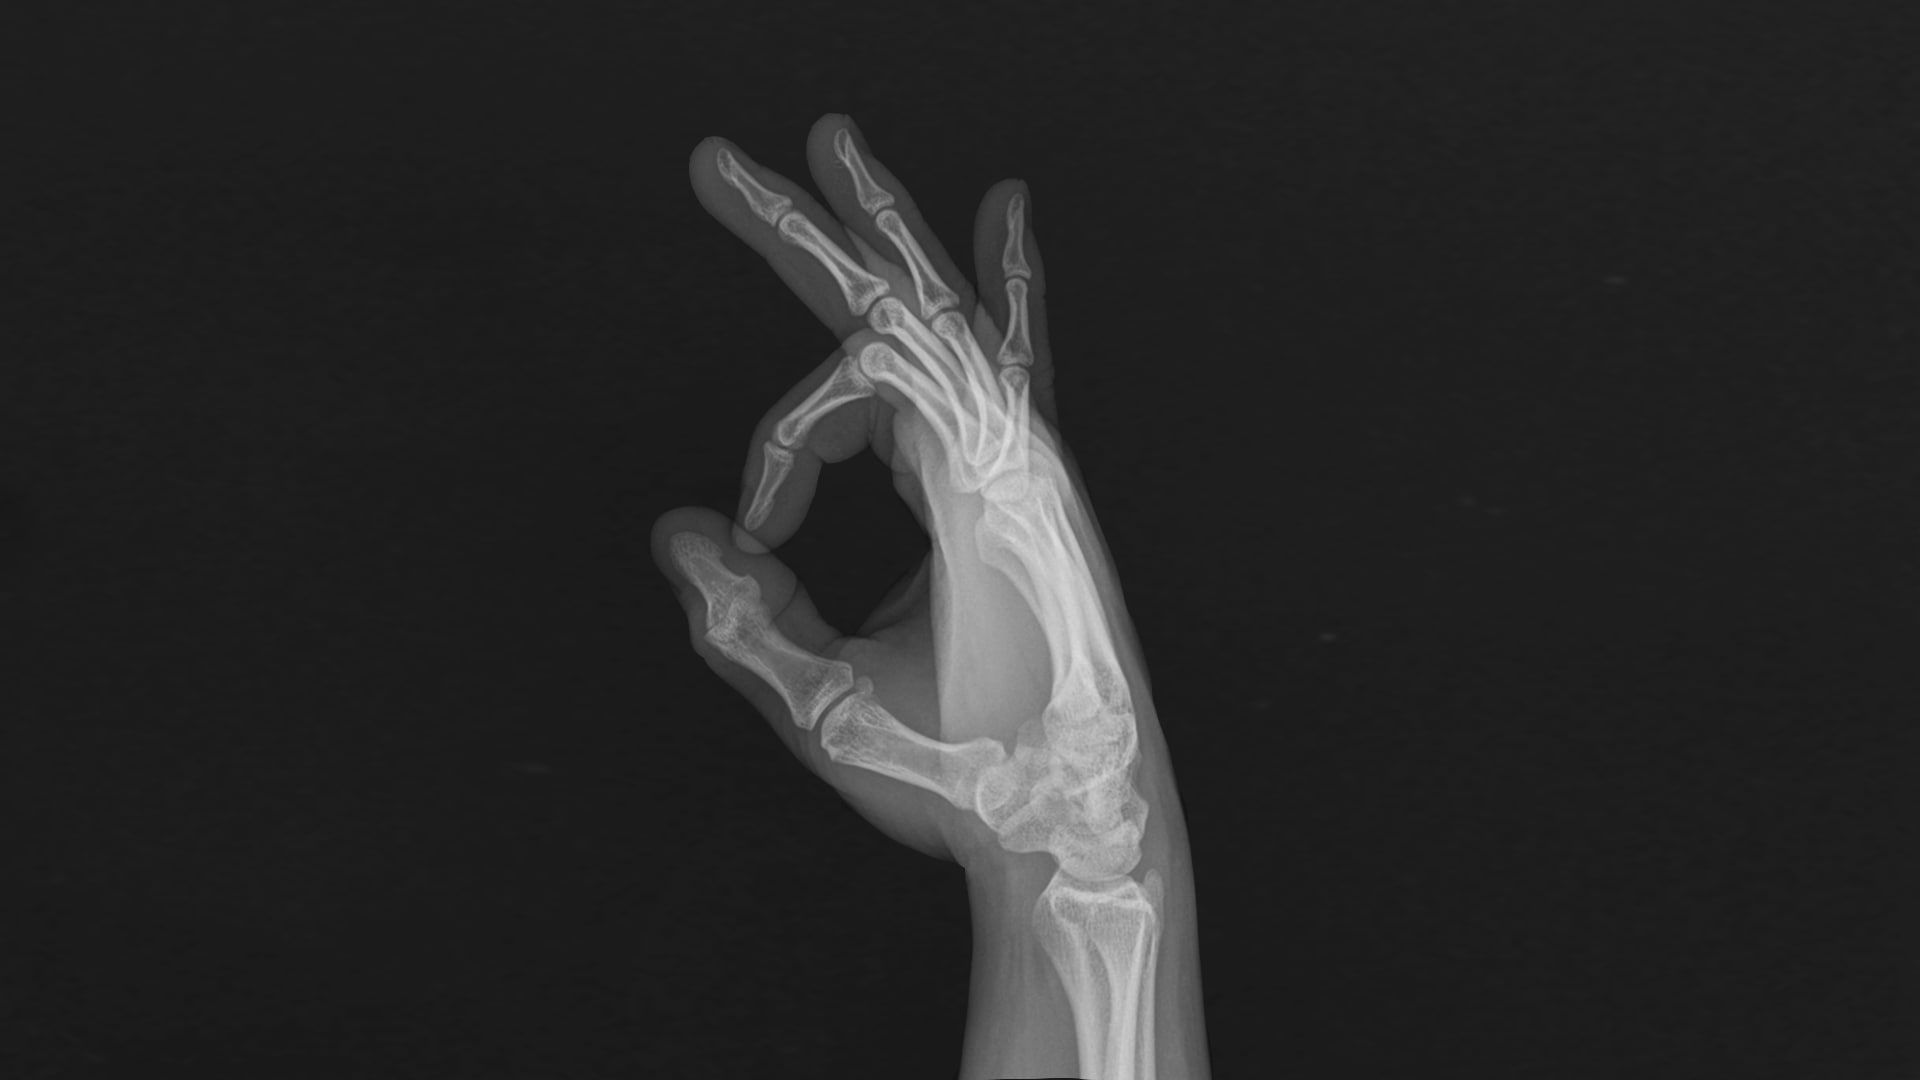 fingers, x-rays, bones, hands